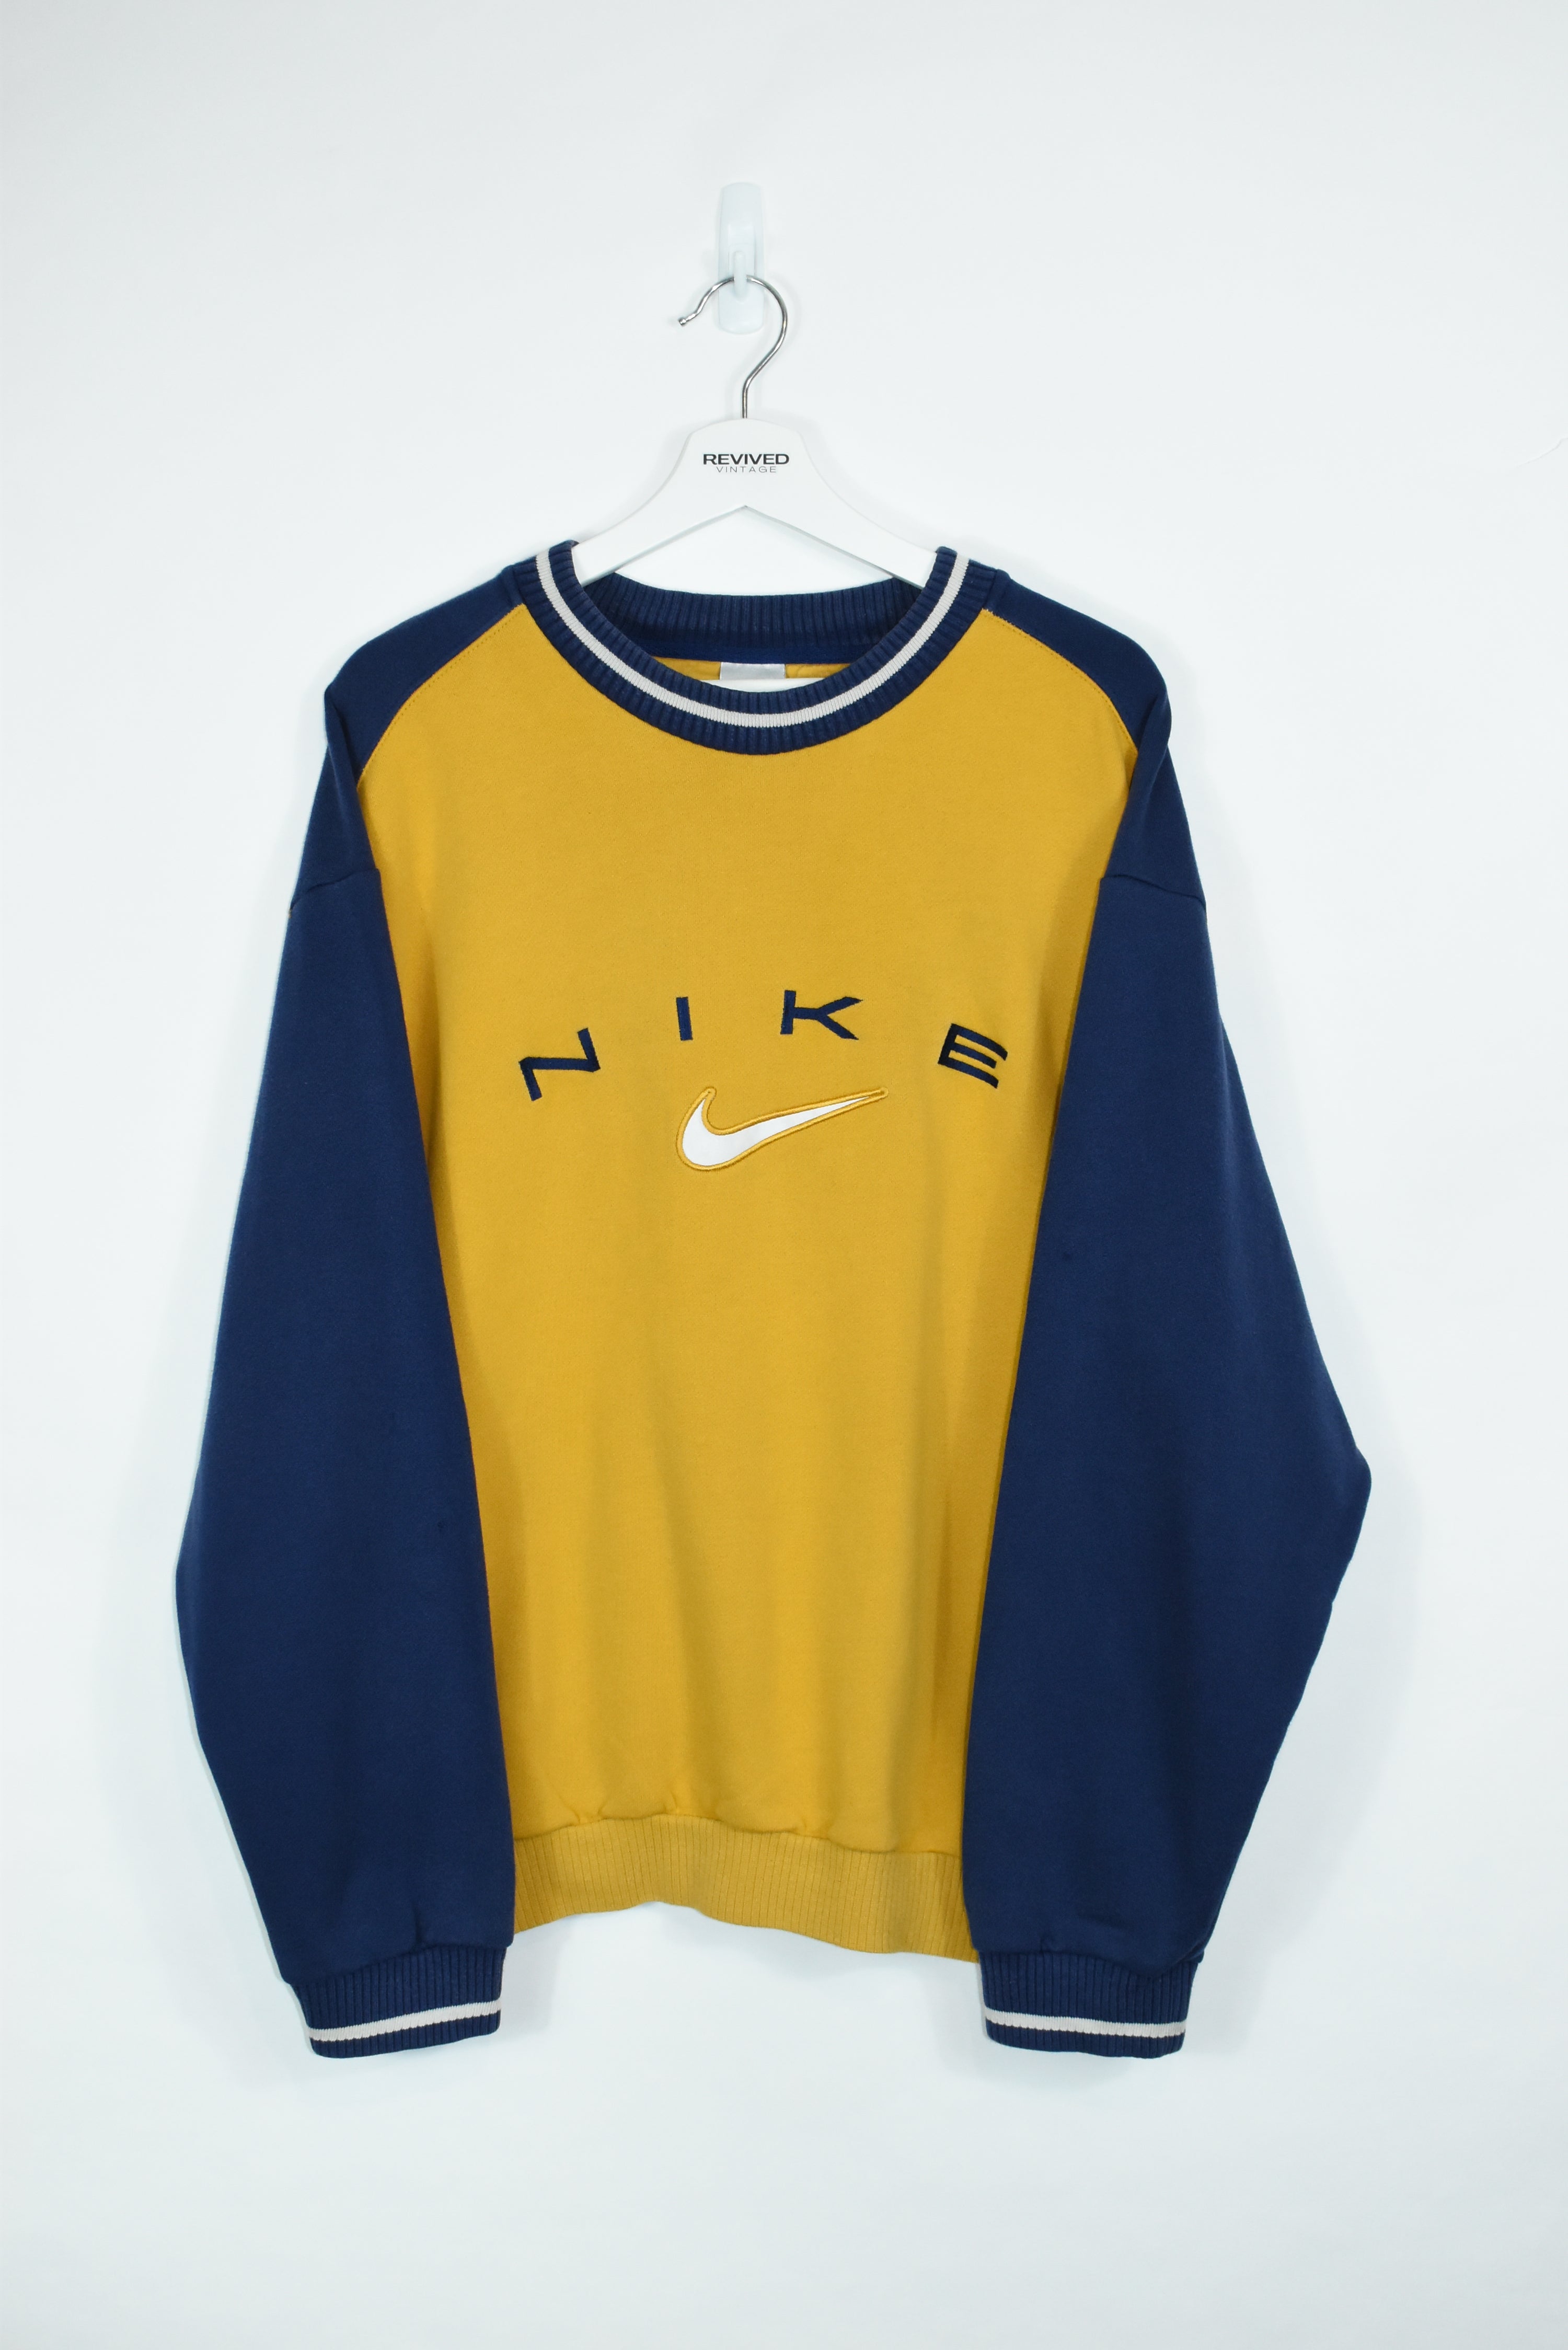 Vintage RARE Nike Embroidery Sweatshirt LARGE